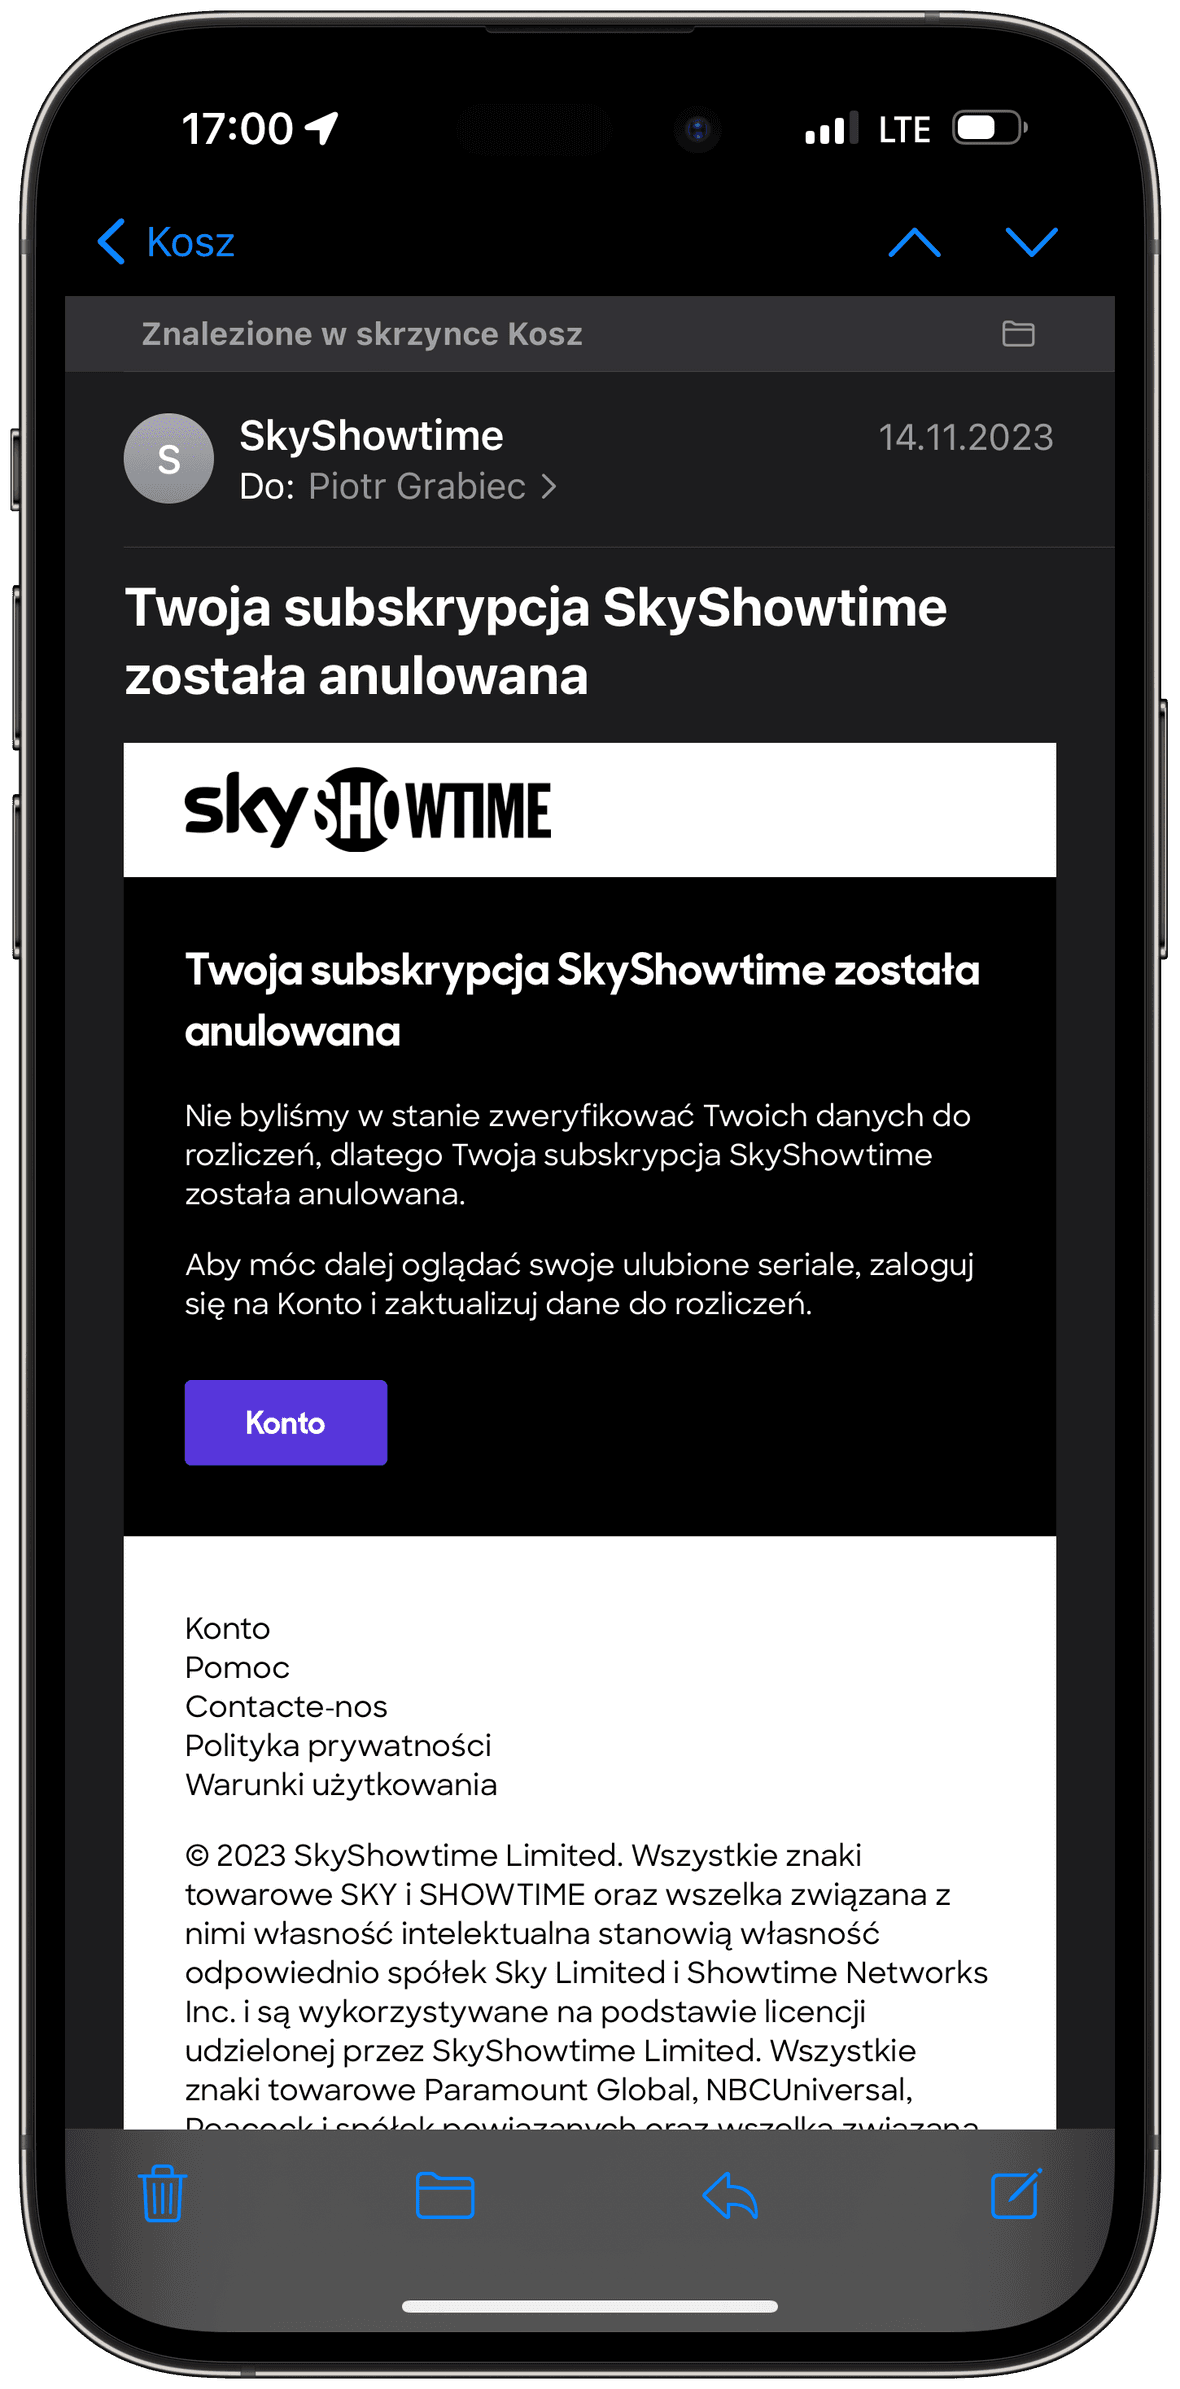 SkyShowtime anulowanie konta e-mail problem płatność PayPal 